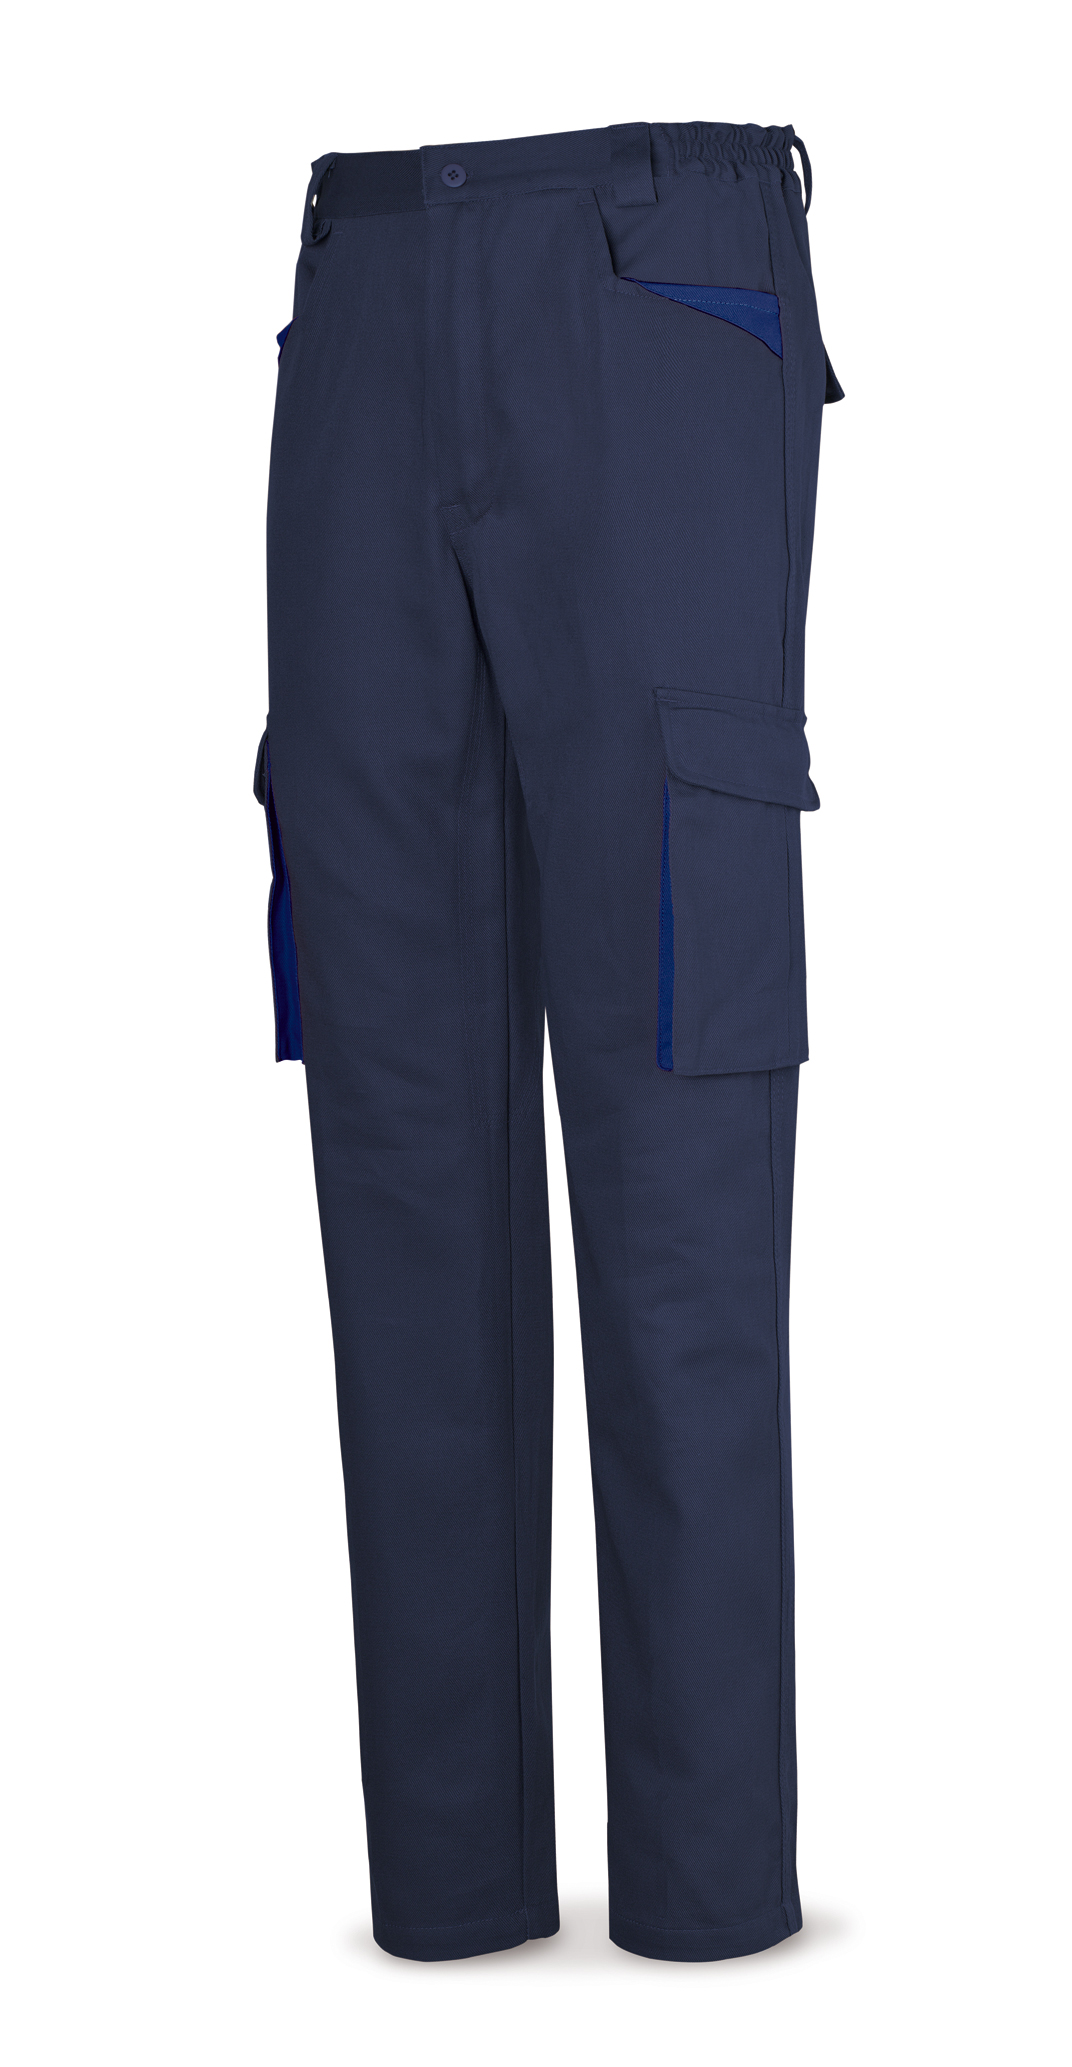 488-PAM SupTop Vestuario Laboral Serie SuperTop Pantalón azul marino en Algodón de 270 g. Multibolsillos